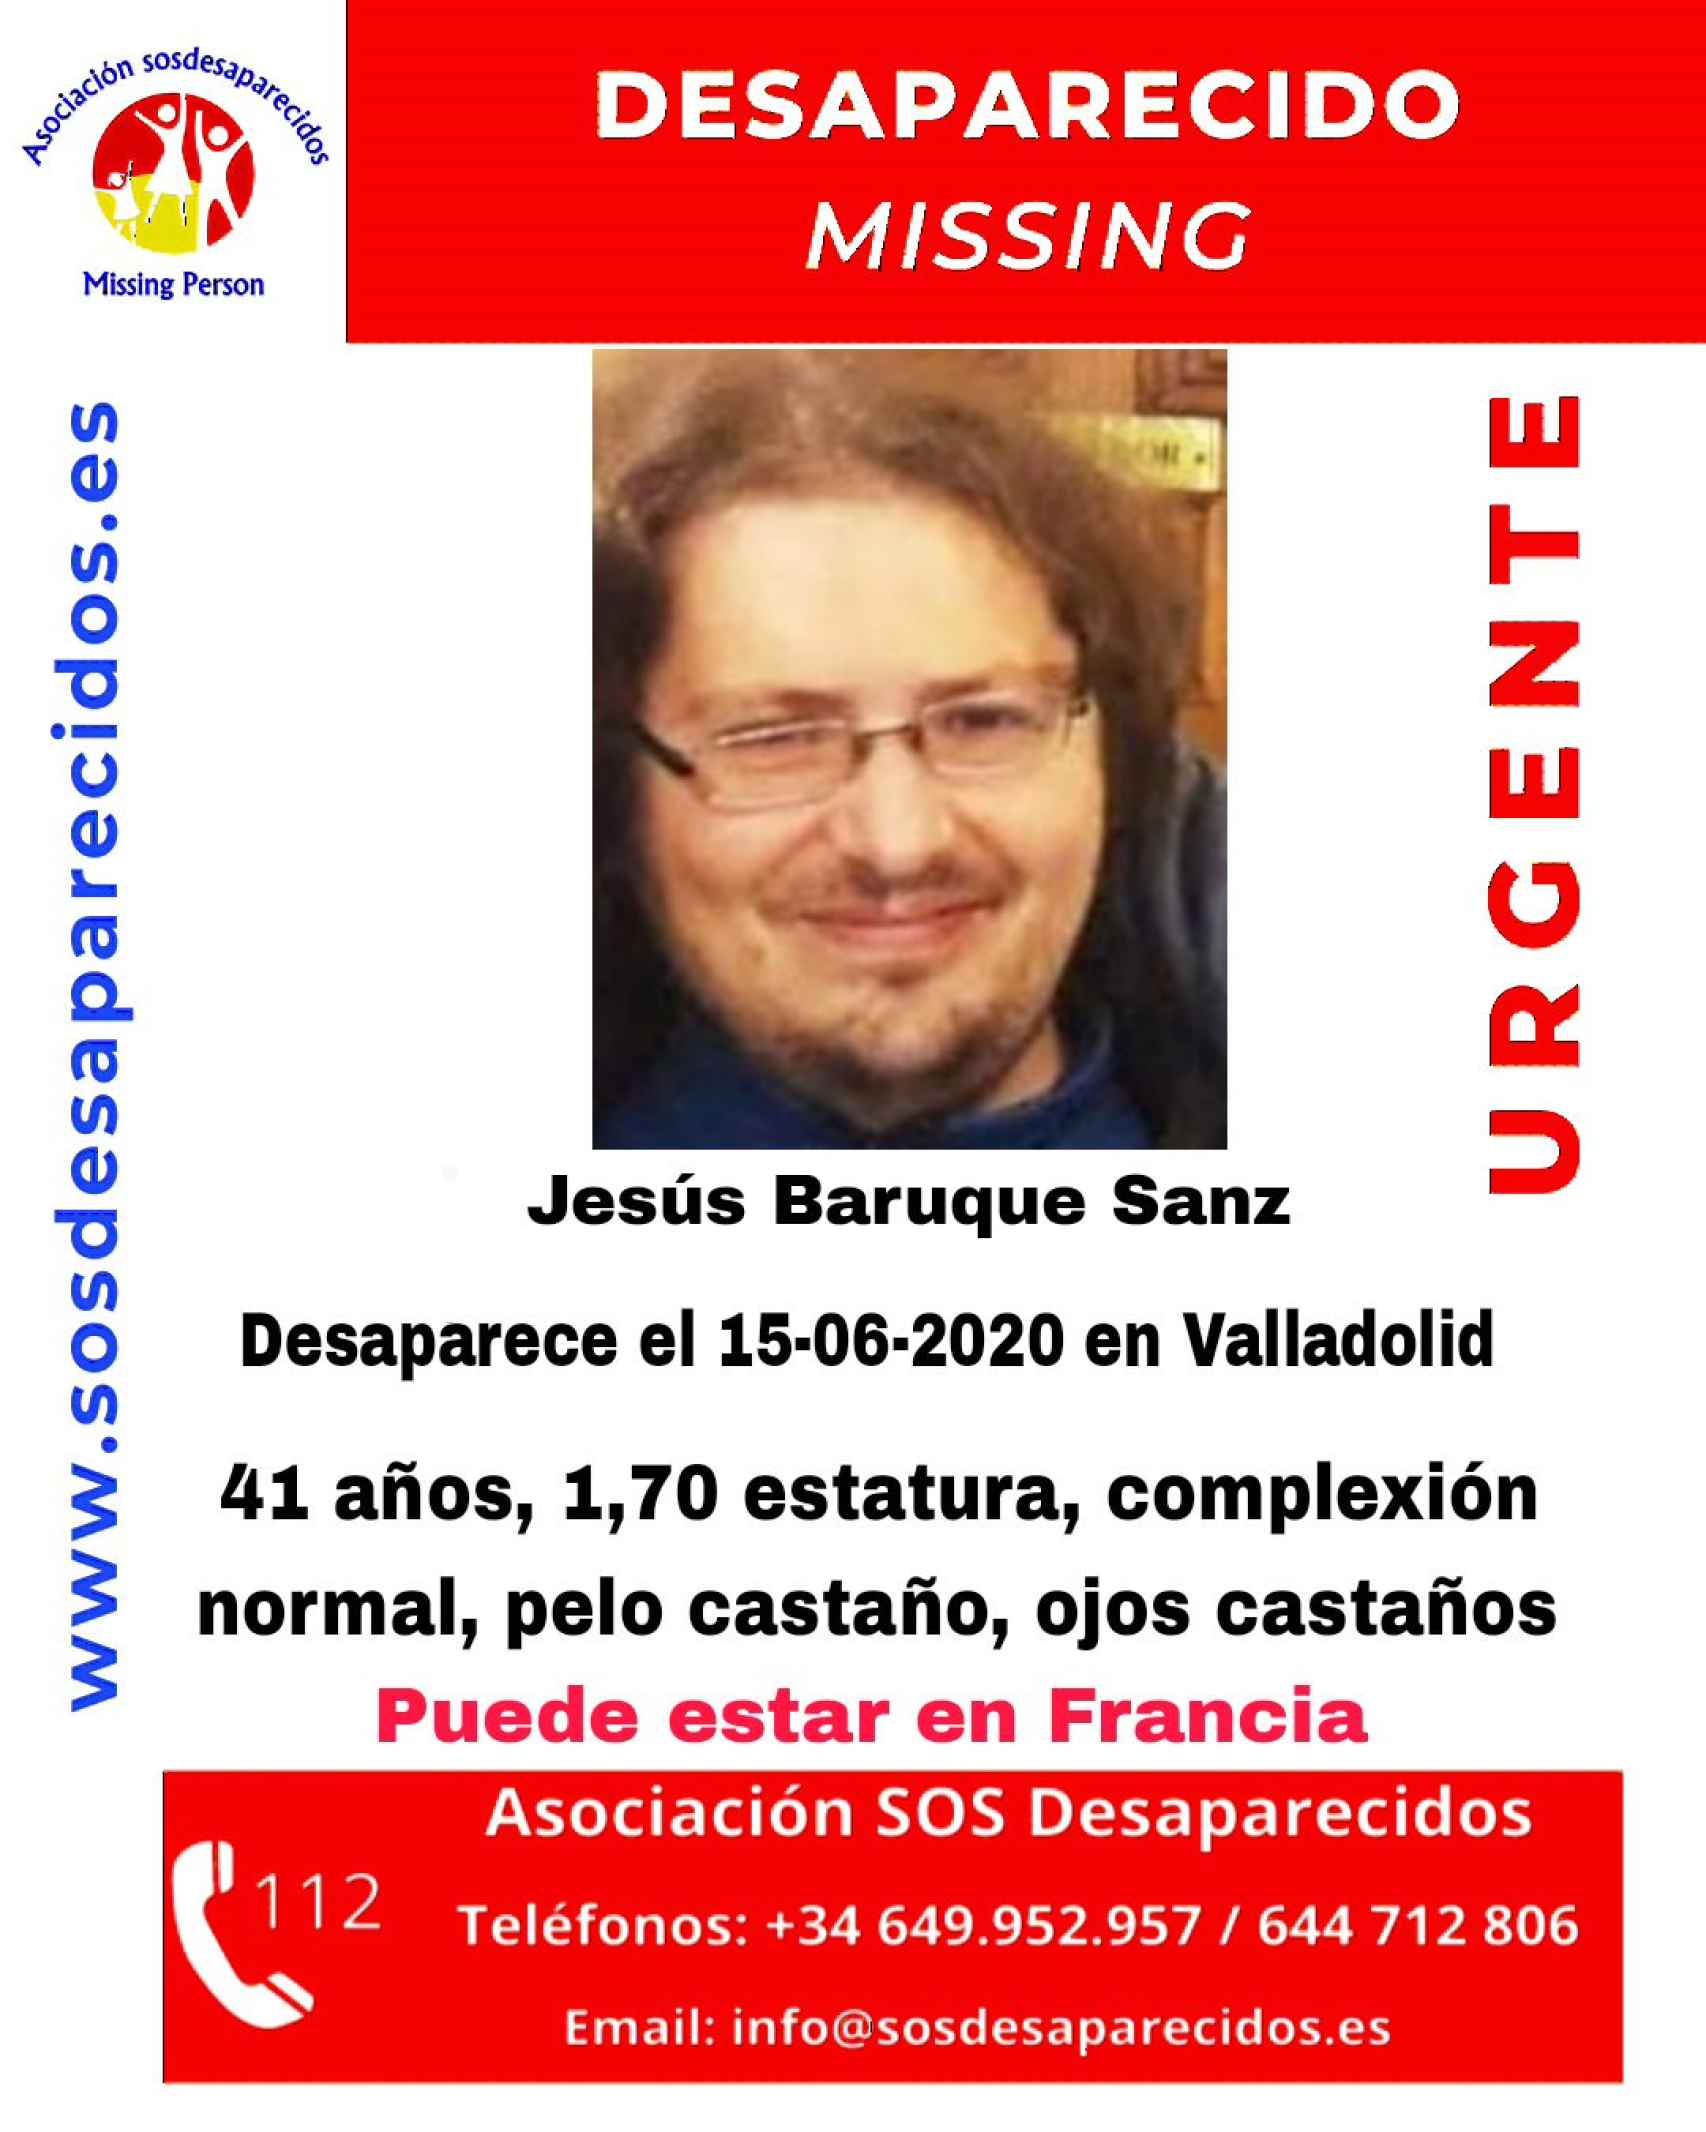 Cartel de Jesús Baruque Sanz, el hombre desparecido hace casi cuatro años en Valladolid